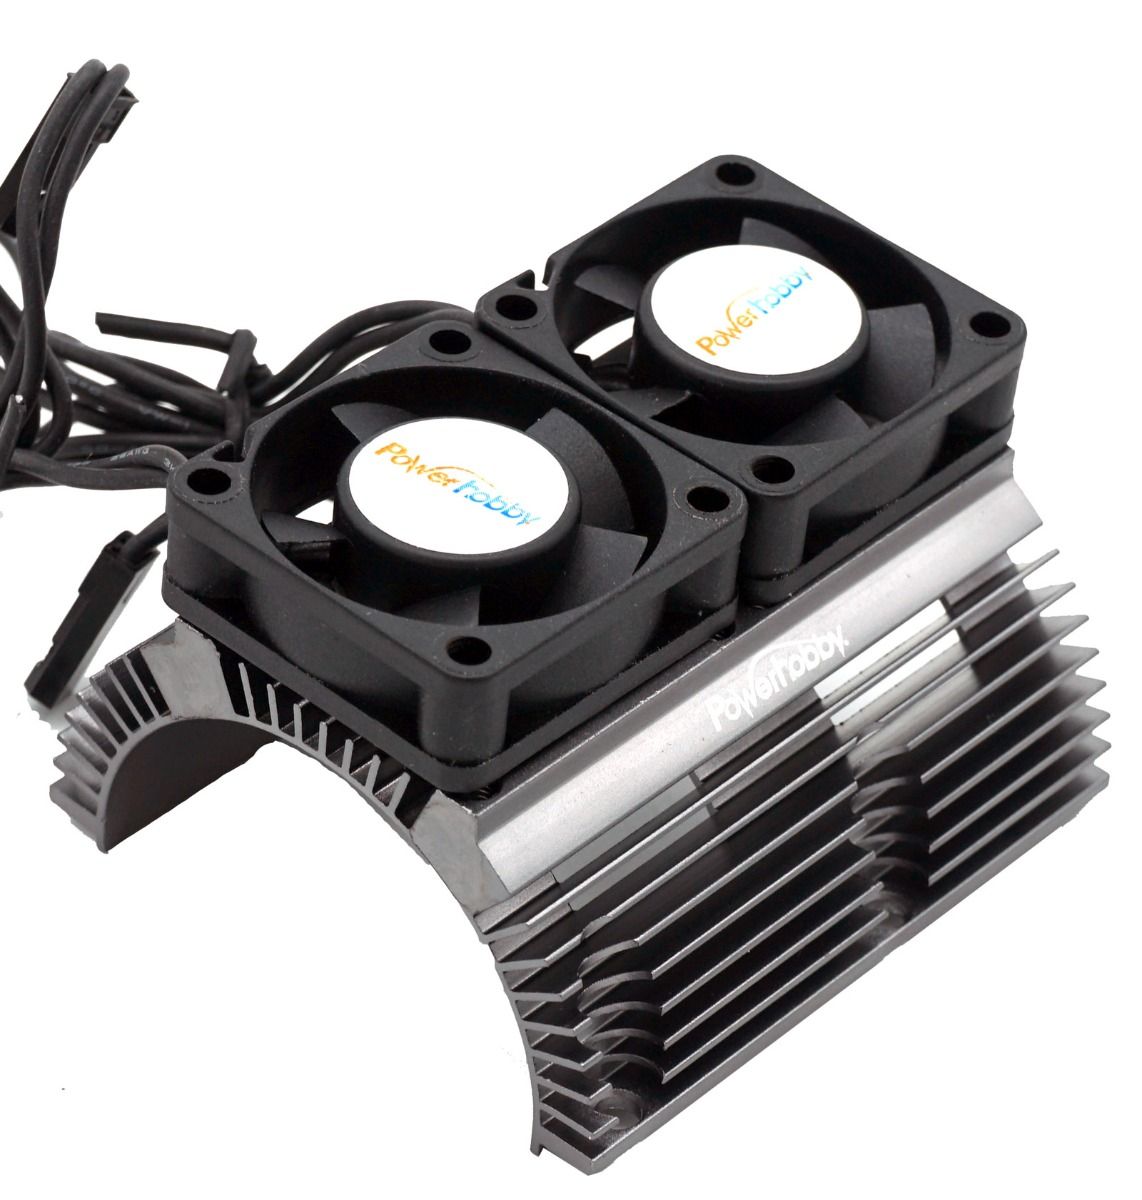 Disipador de calor Power Hobby con ventiladores Twin Turbo de alta velocidad (varios colores)